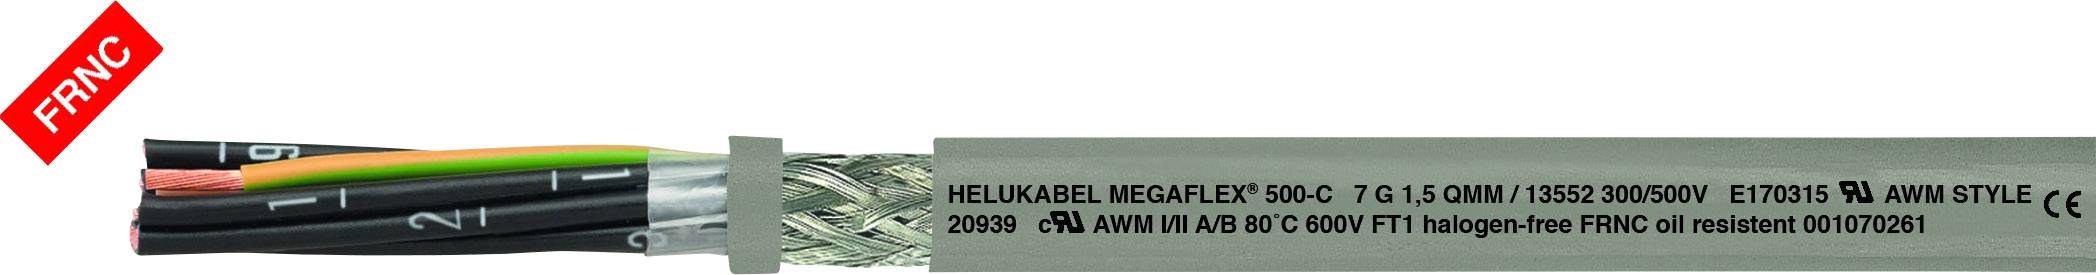 HELUKABEL MEGAFLEX® 500-C Steuerleitung 7 G 1 mm² Grau 13538 Meterware